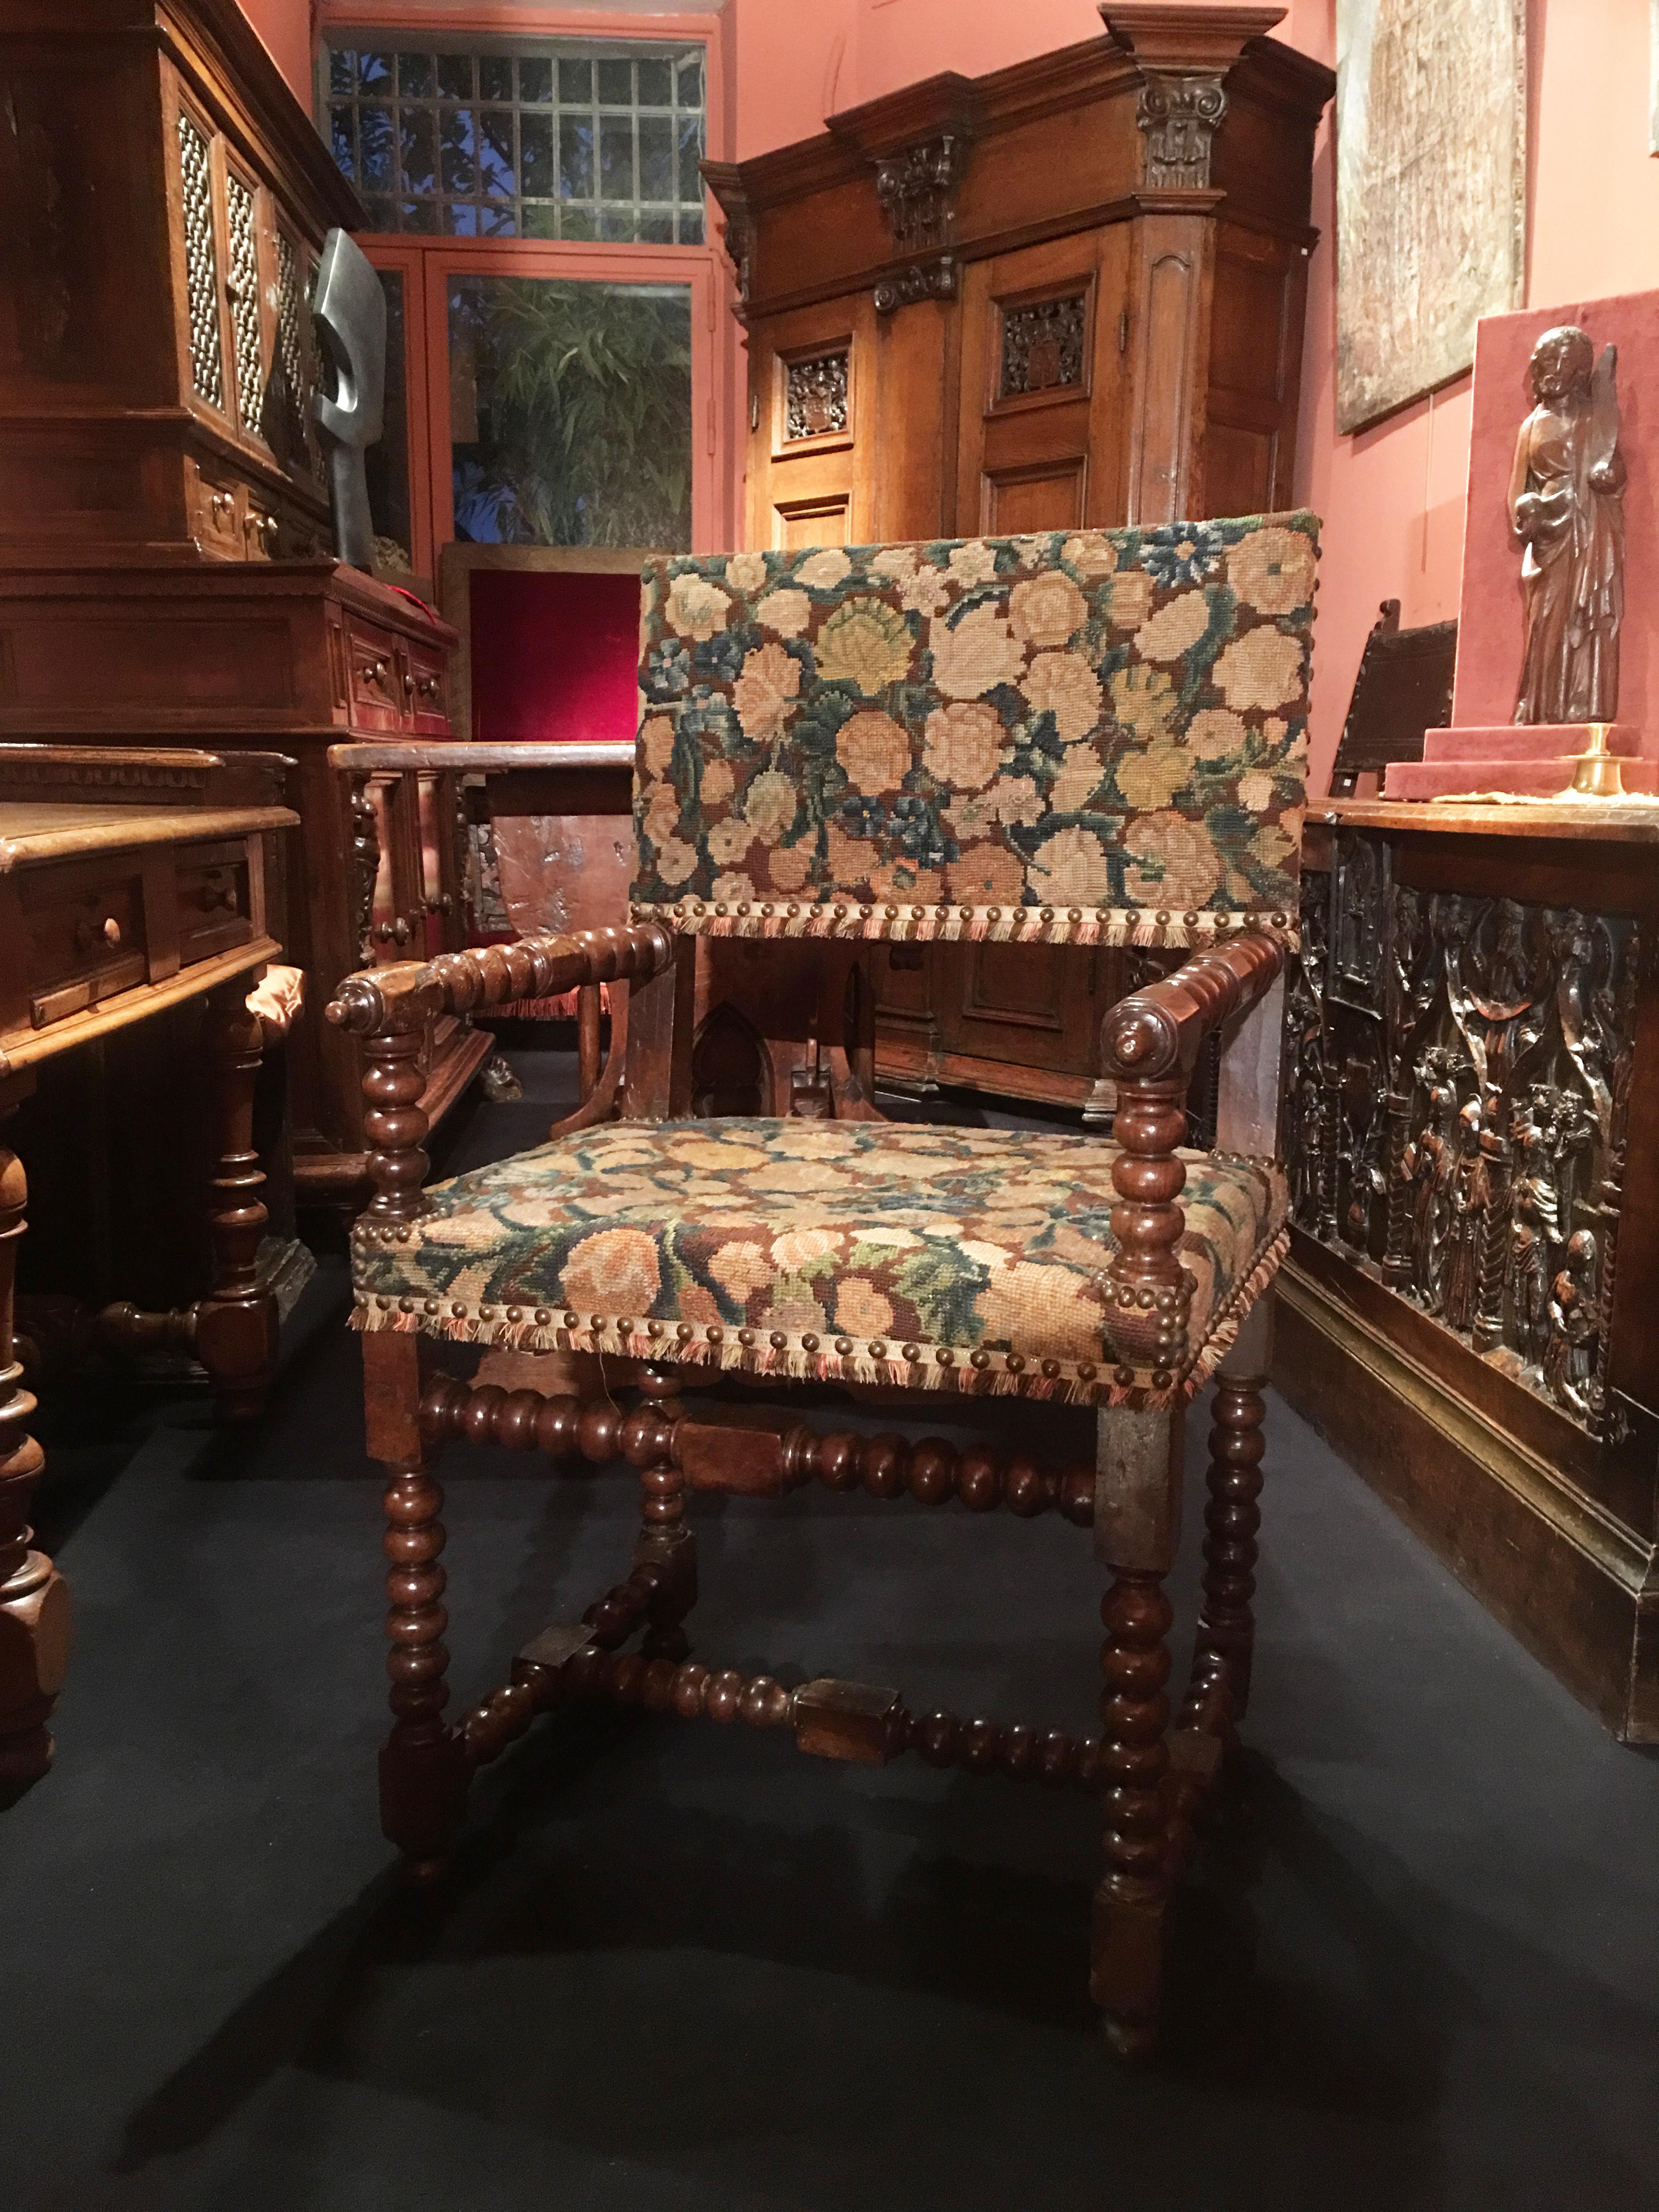 Durant la première moitié du XVIIe siècle, les chaises évoluent vers un nouveau modèle aujourd'hui connu sous le nom de Louis XIII préfigurant le fauteuil. Les chaises adoptent une silhouette plus large et plus basse. Les lignes horizontales